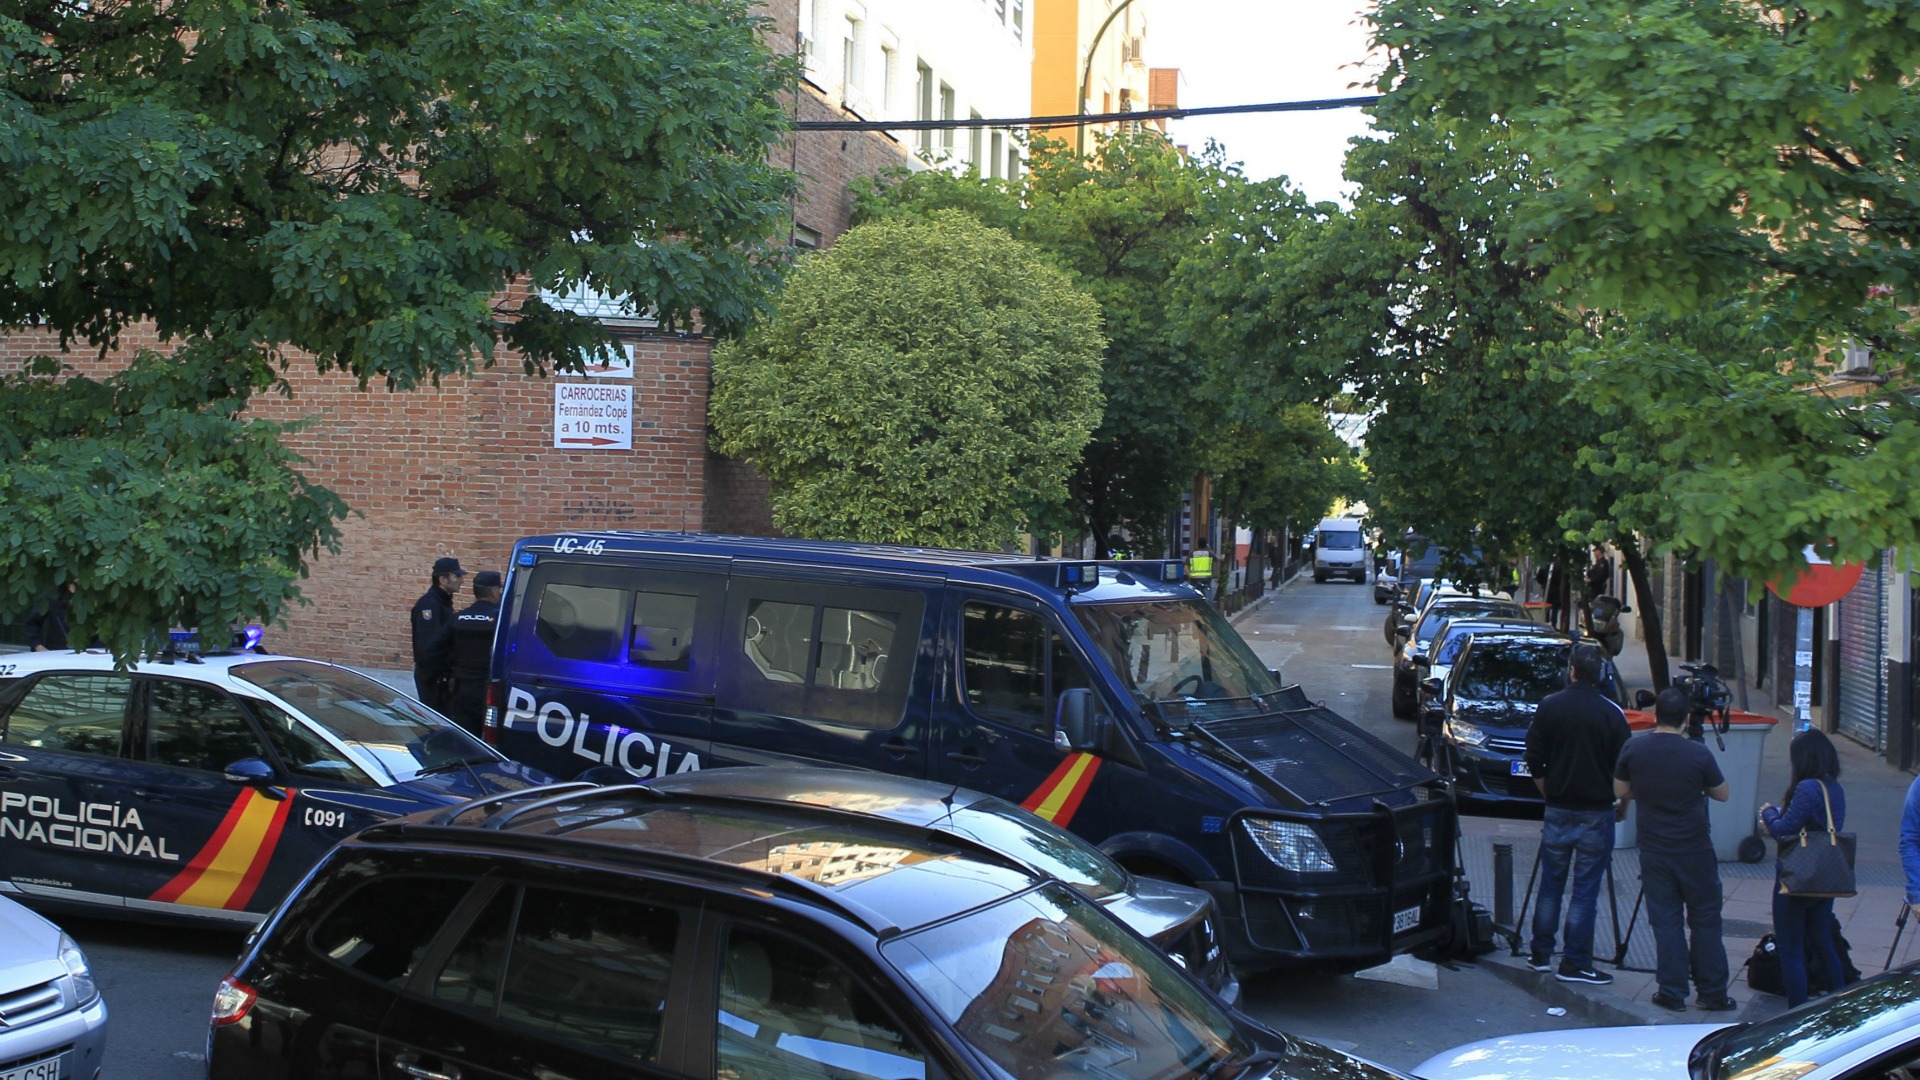 La policía detiene en Madrid a dos yihadistas pertenecientes a una célula terrorista